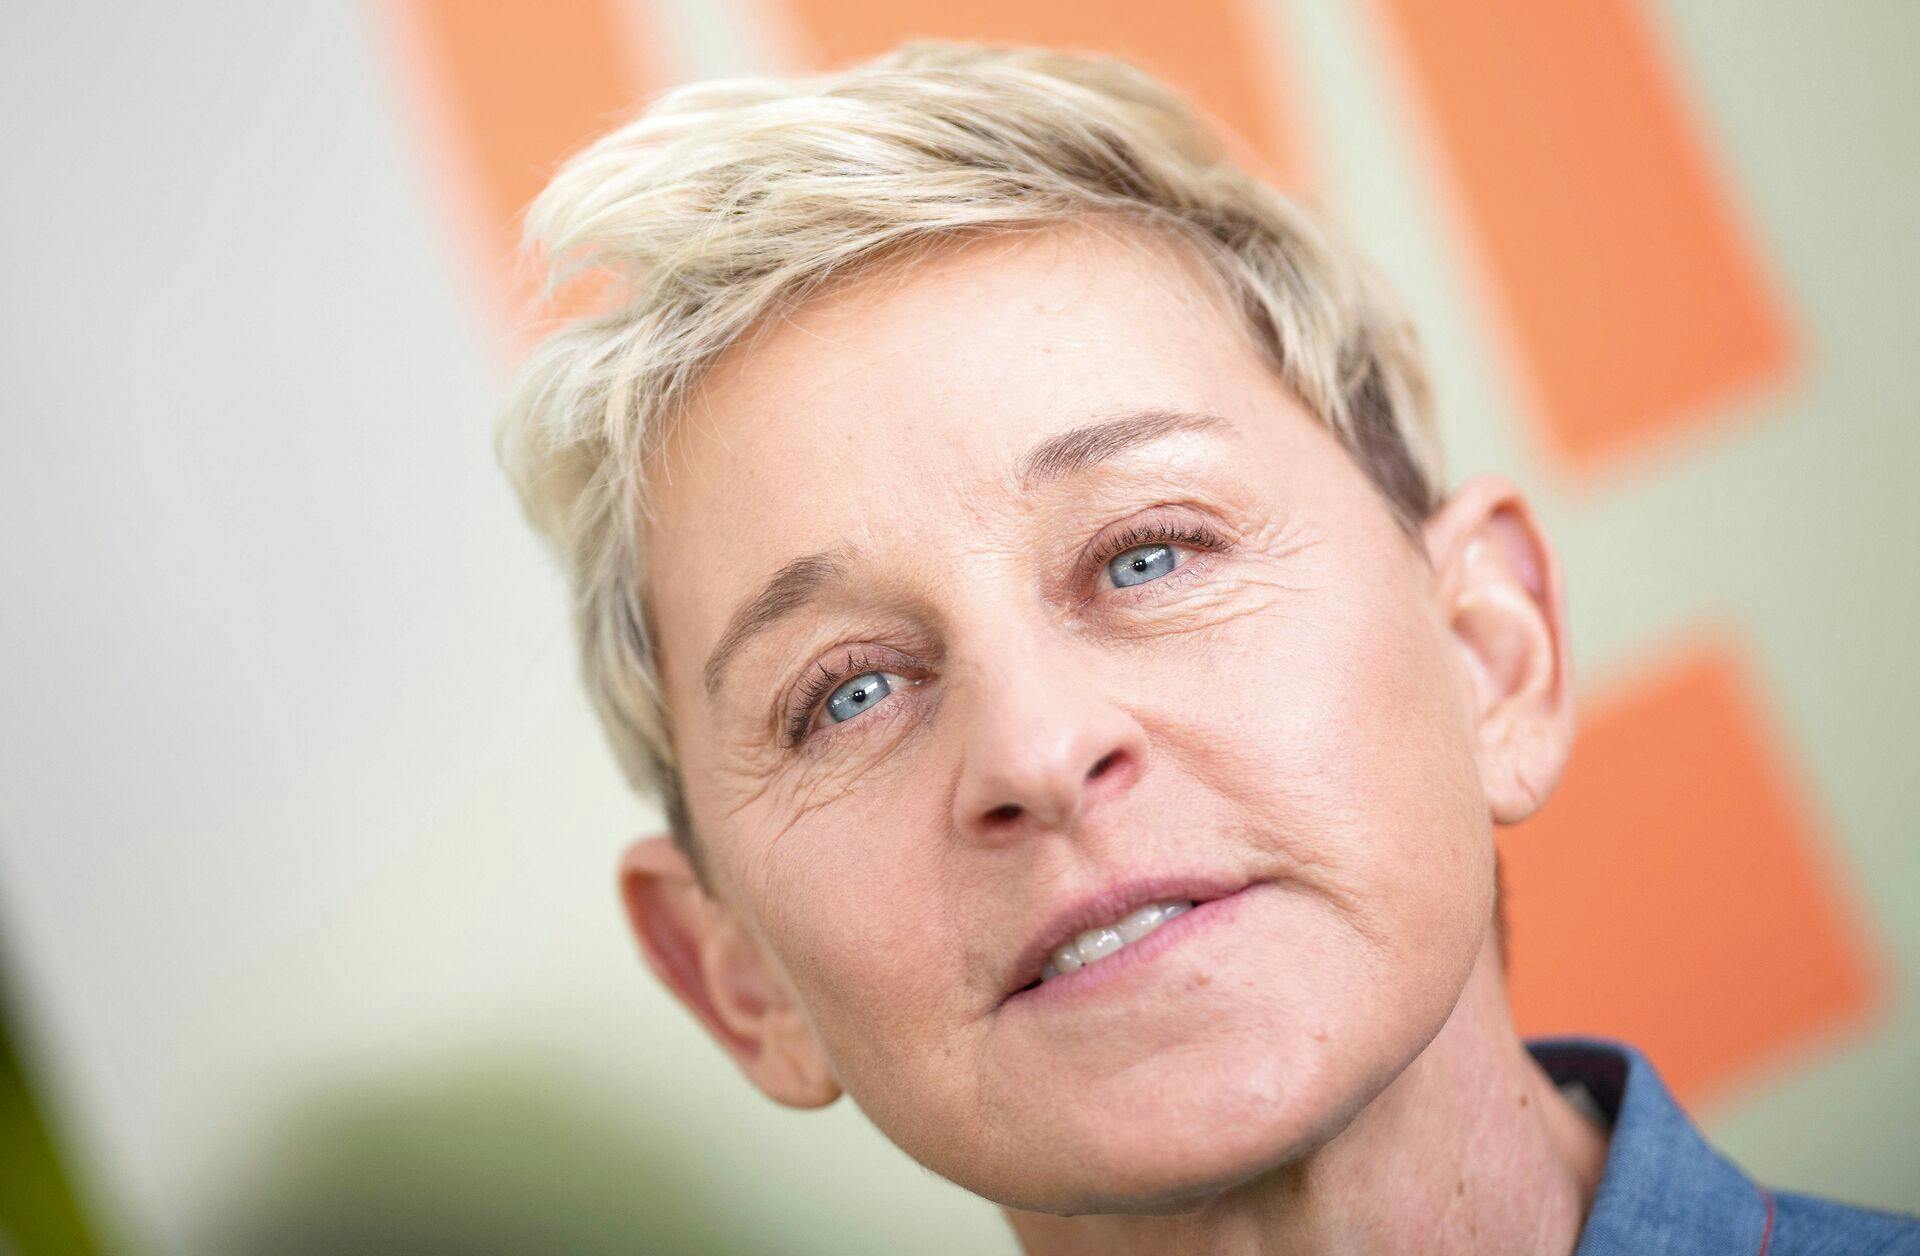 Ellen DeGeneres fortæller i et hjerteskærende opslag, hvor hun vil mindes sin afdøde ven Stephen "Twitch" Boss. nbsp;